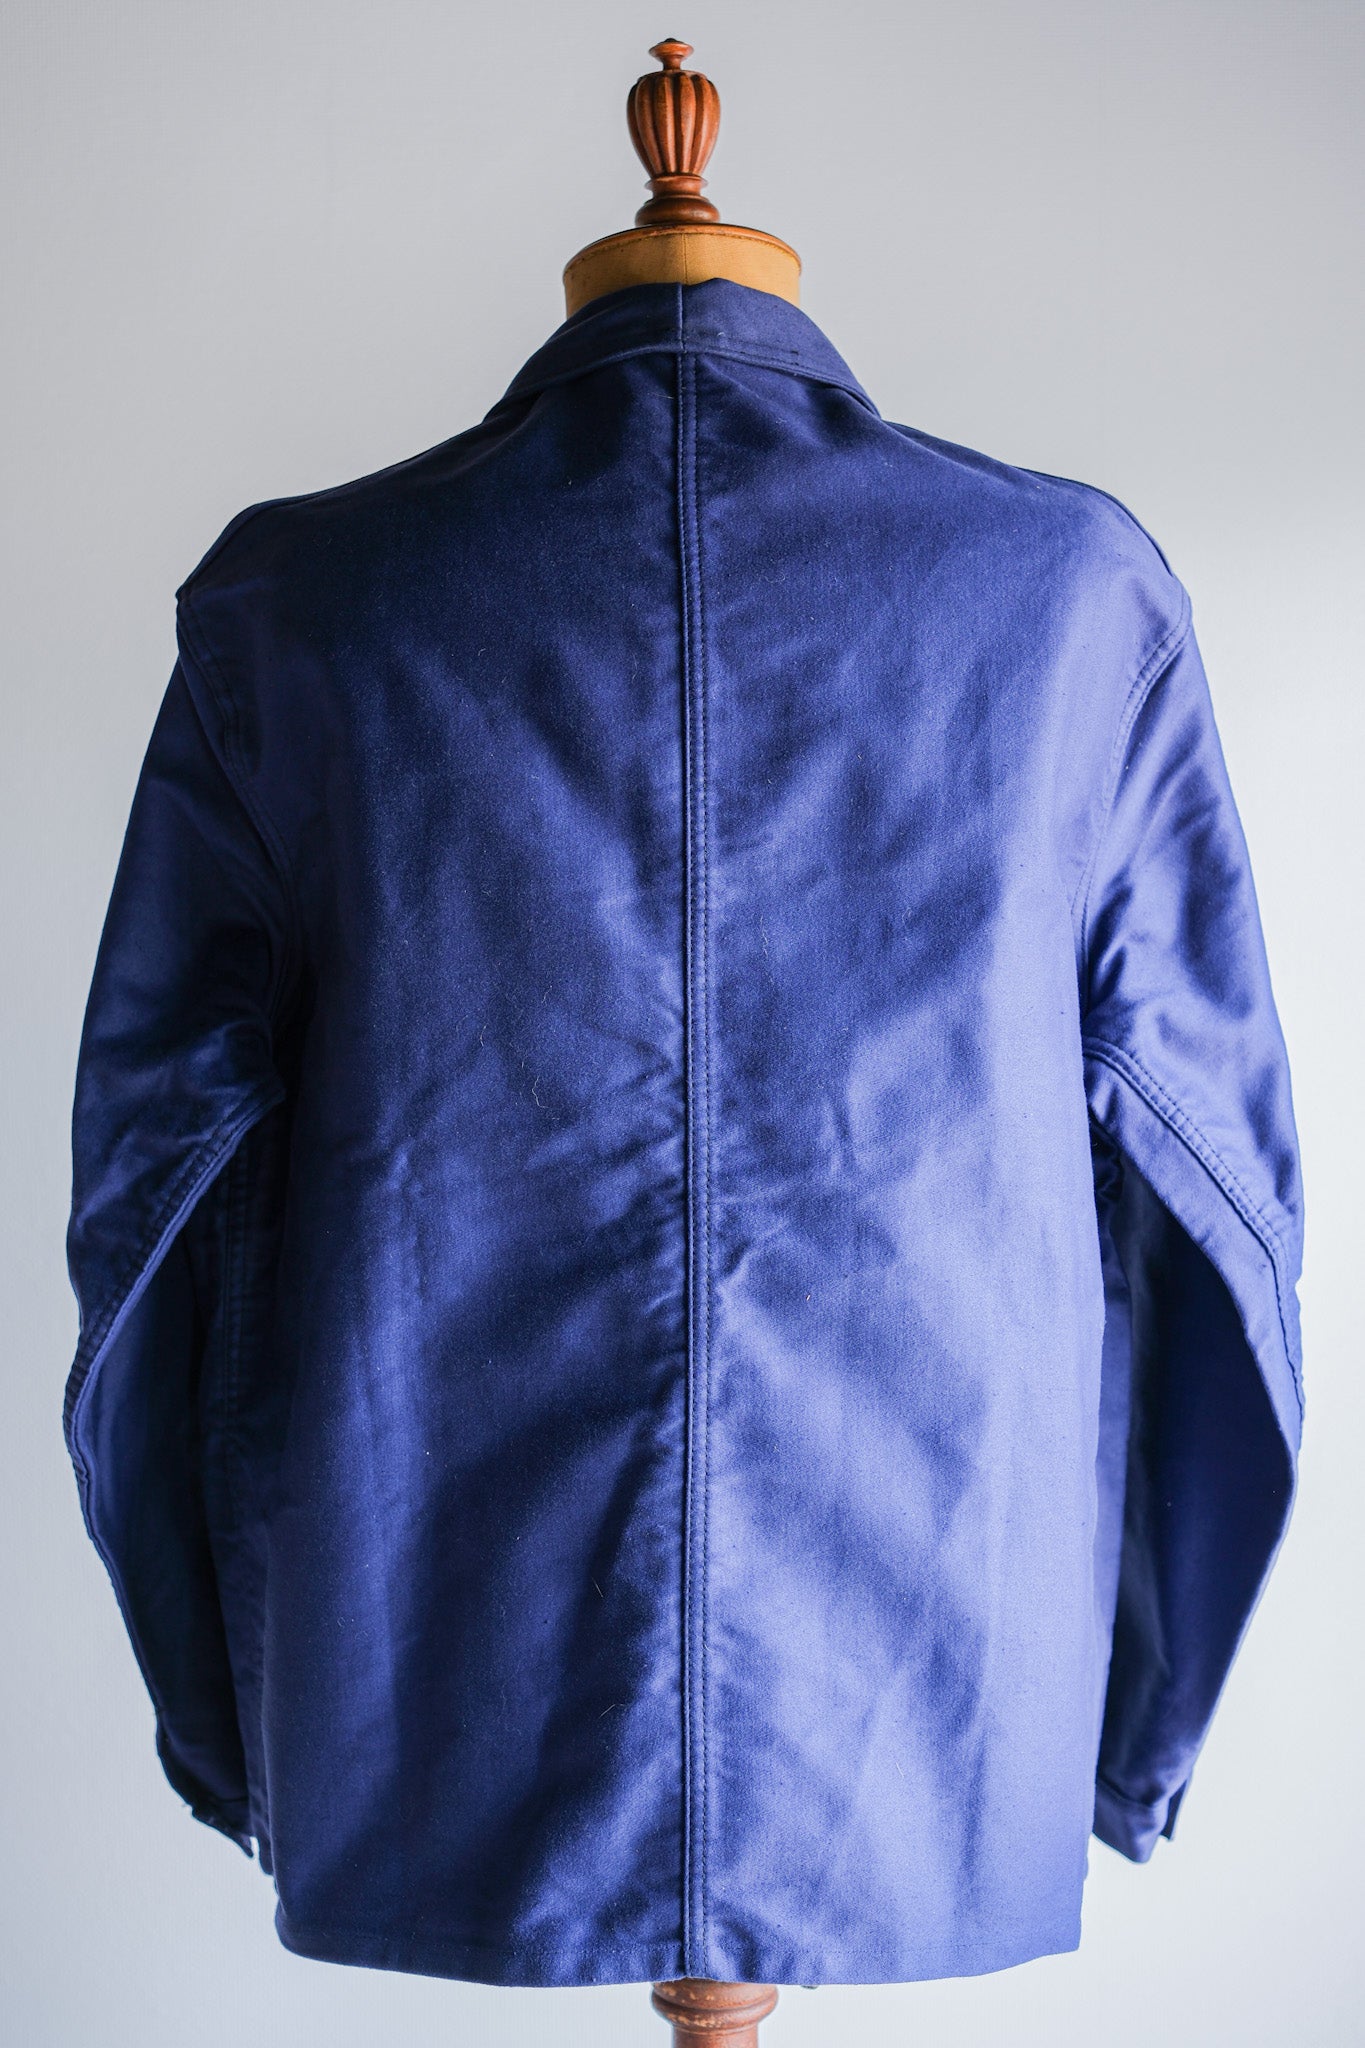 [〜50年代]法國復古藍色摩爾斯金夾克夾克尺寸。